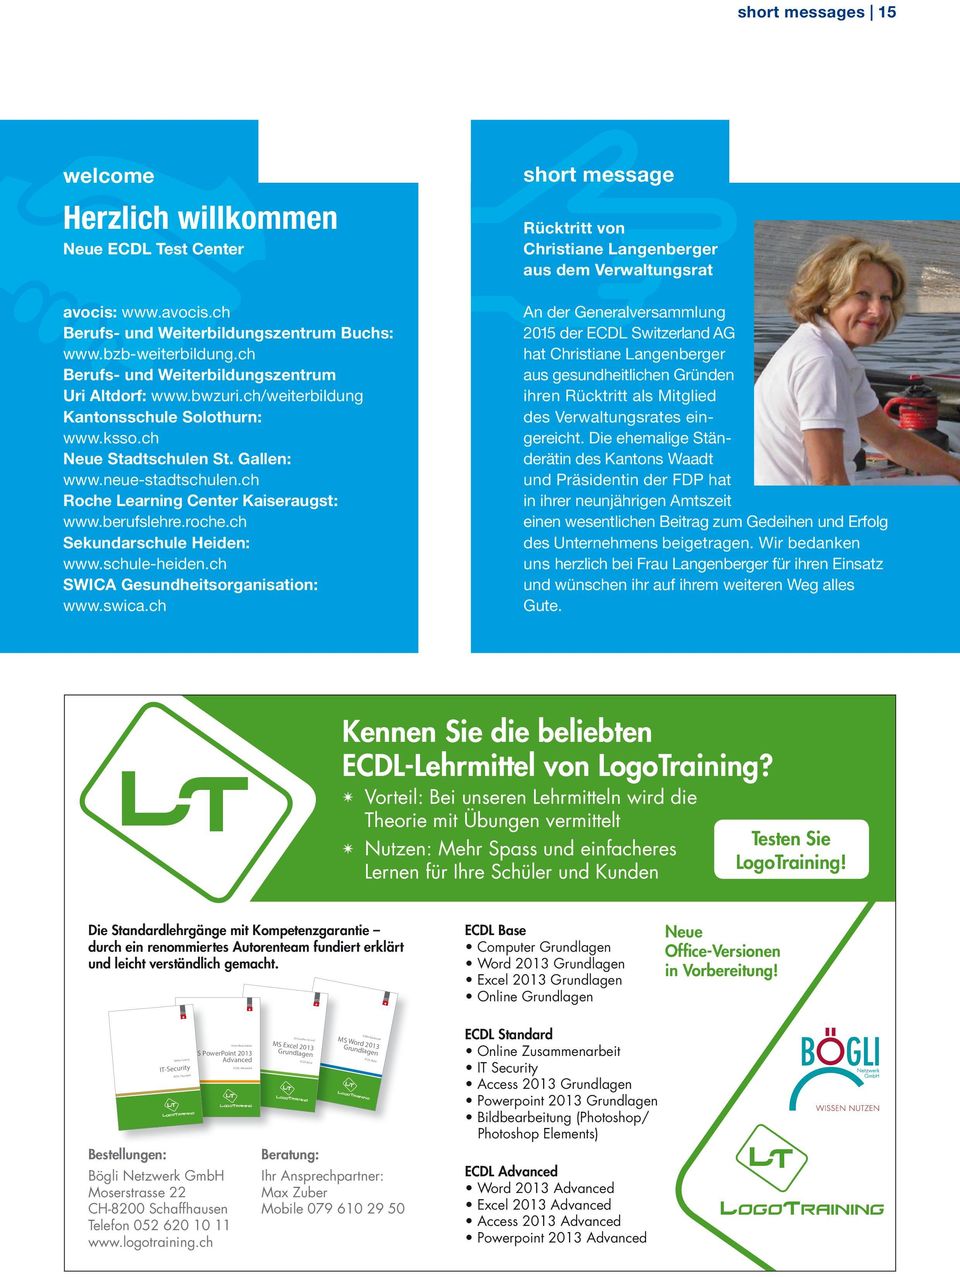 ch Roche Learning Center Kaiseraugst: www.berufslehre.roche.ch Sekundarschule Heiden: www.schule-heiden.ch SWICA Gesundheitsorganisation: www.swica.